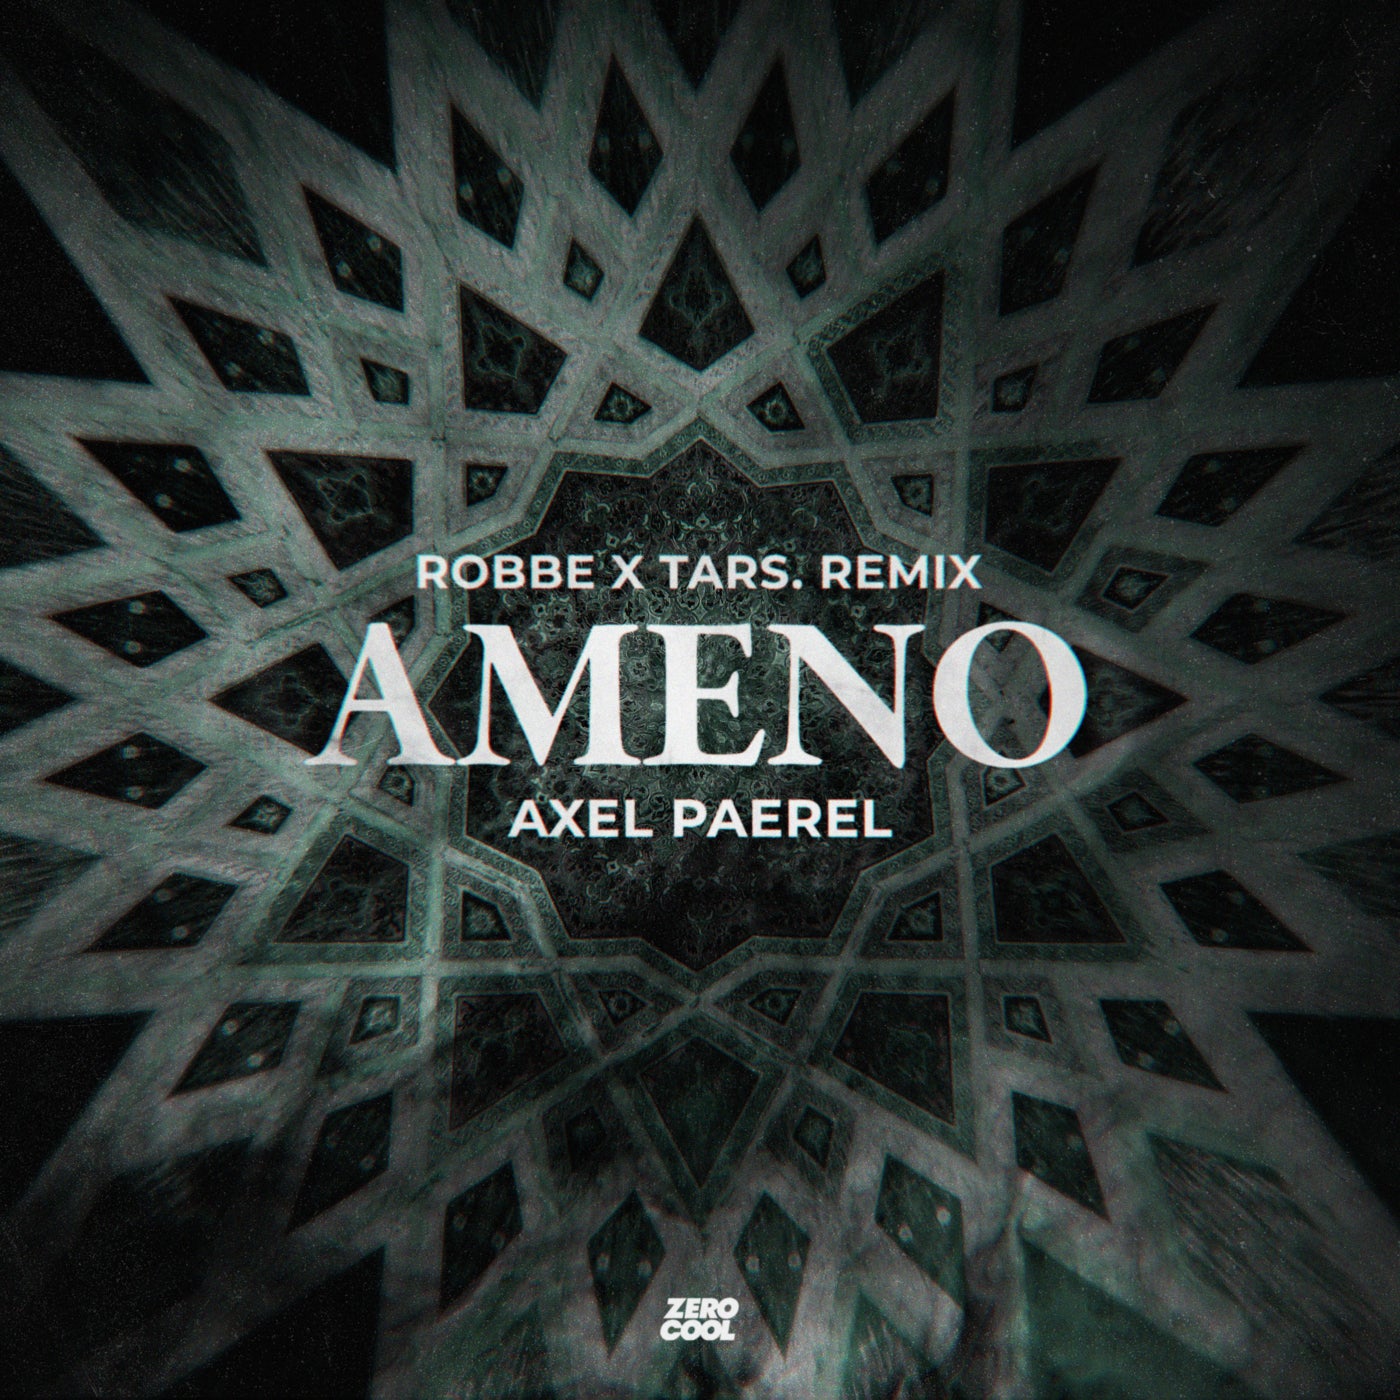 image cover: Robbe, Axel Paerel, TARS. - Ameno (Robbe & TARS. Techno Remix) on Zero Cool